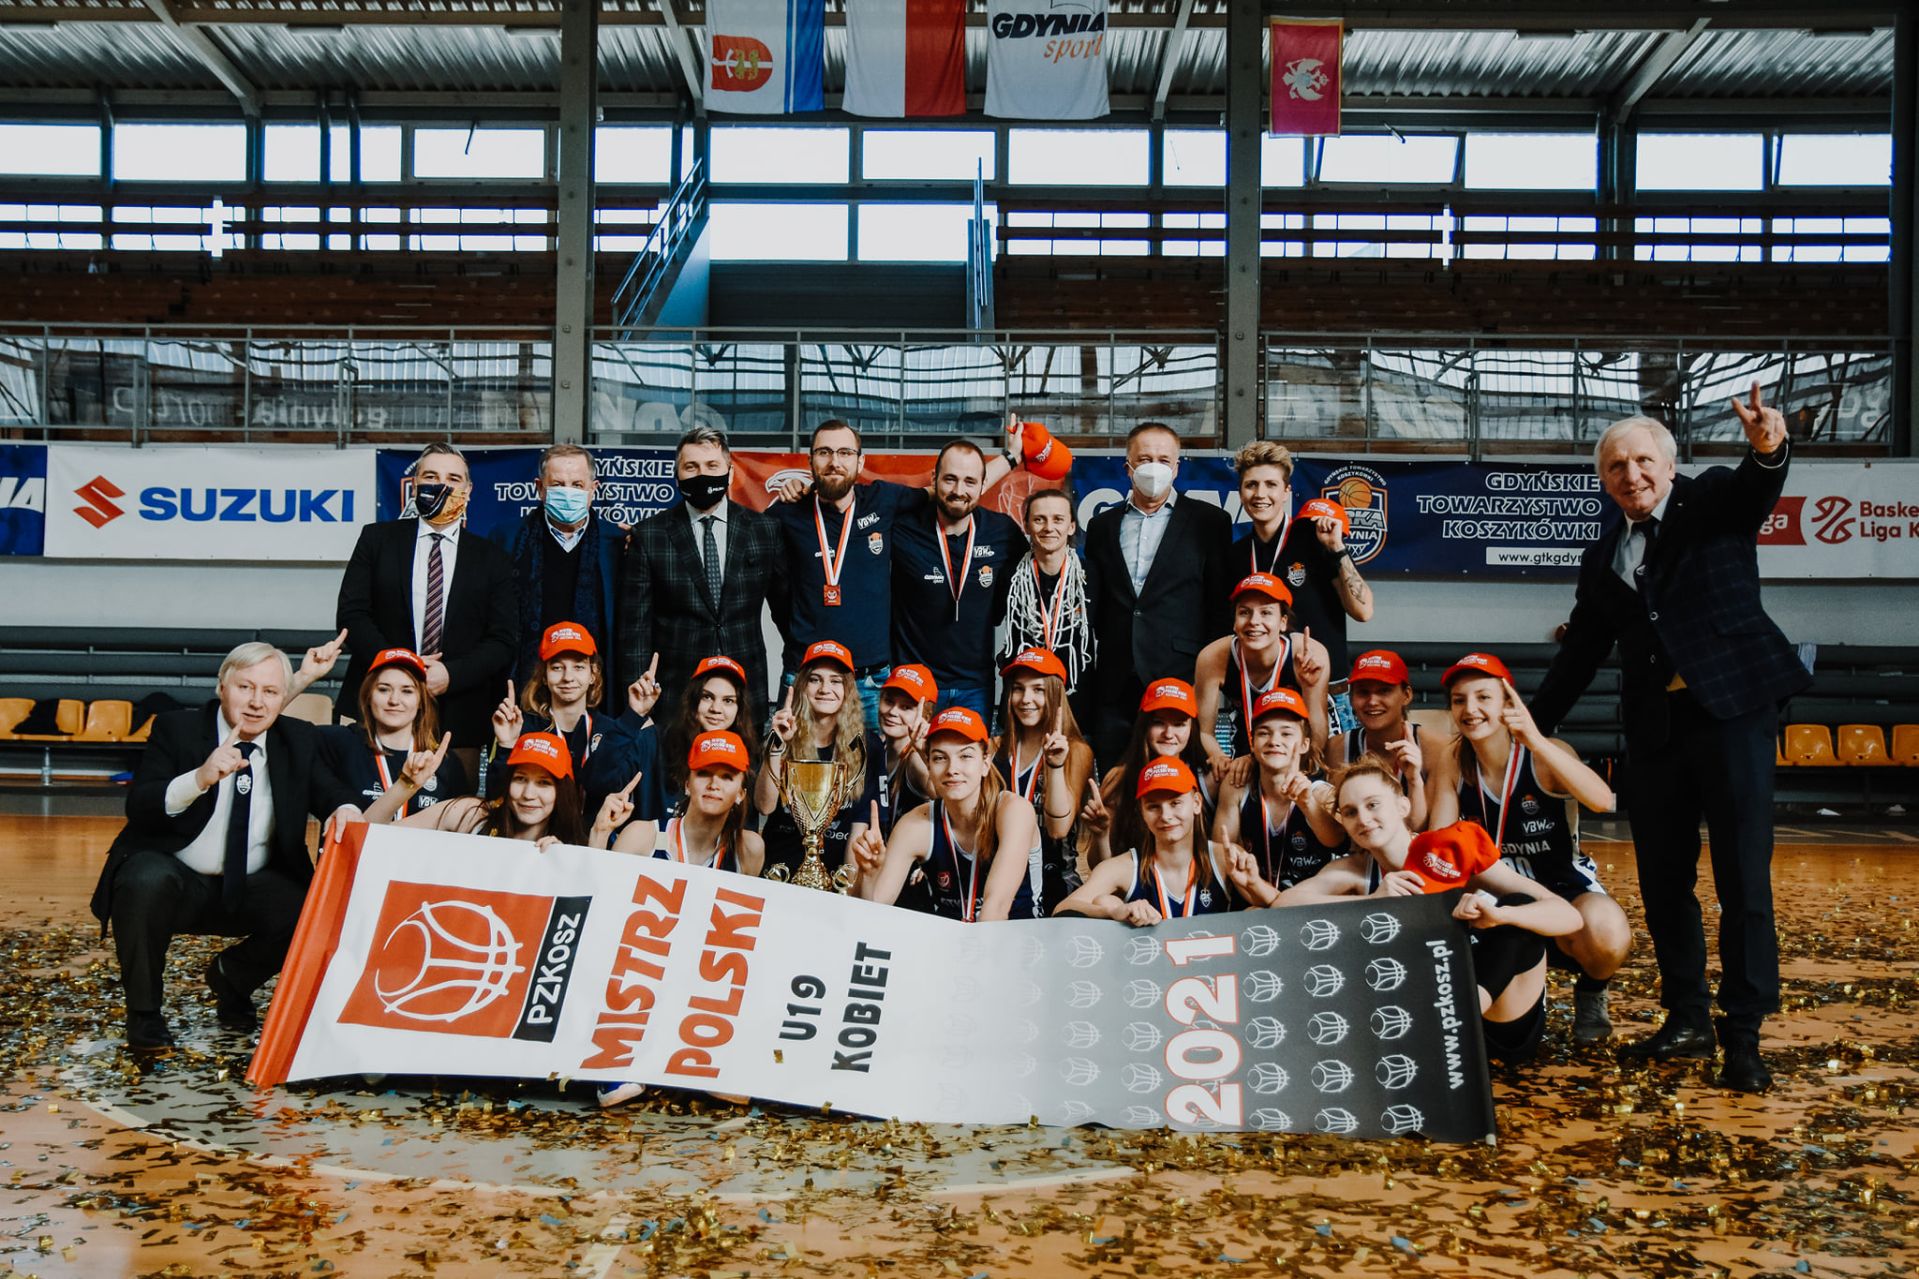 Koszykarki GTK Gdynia świętujące zdobycie tytułu Mistrza Polski U19 